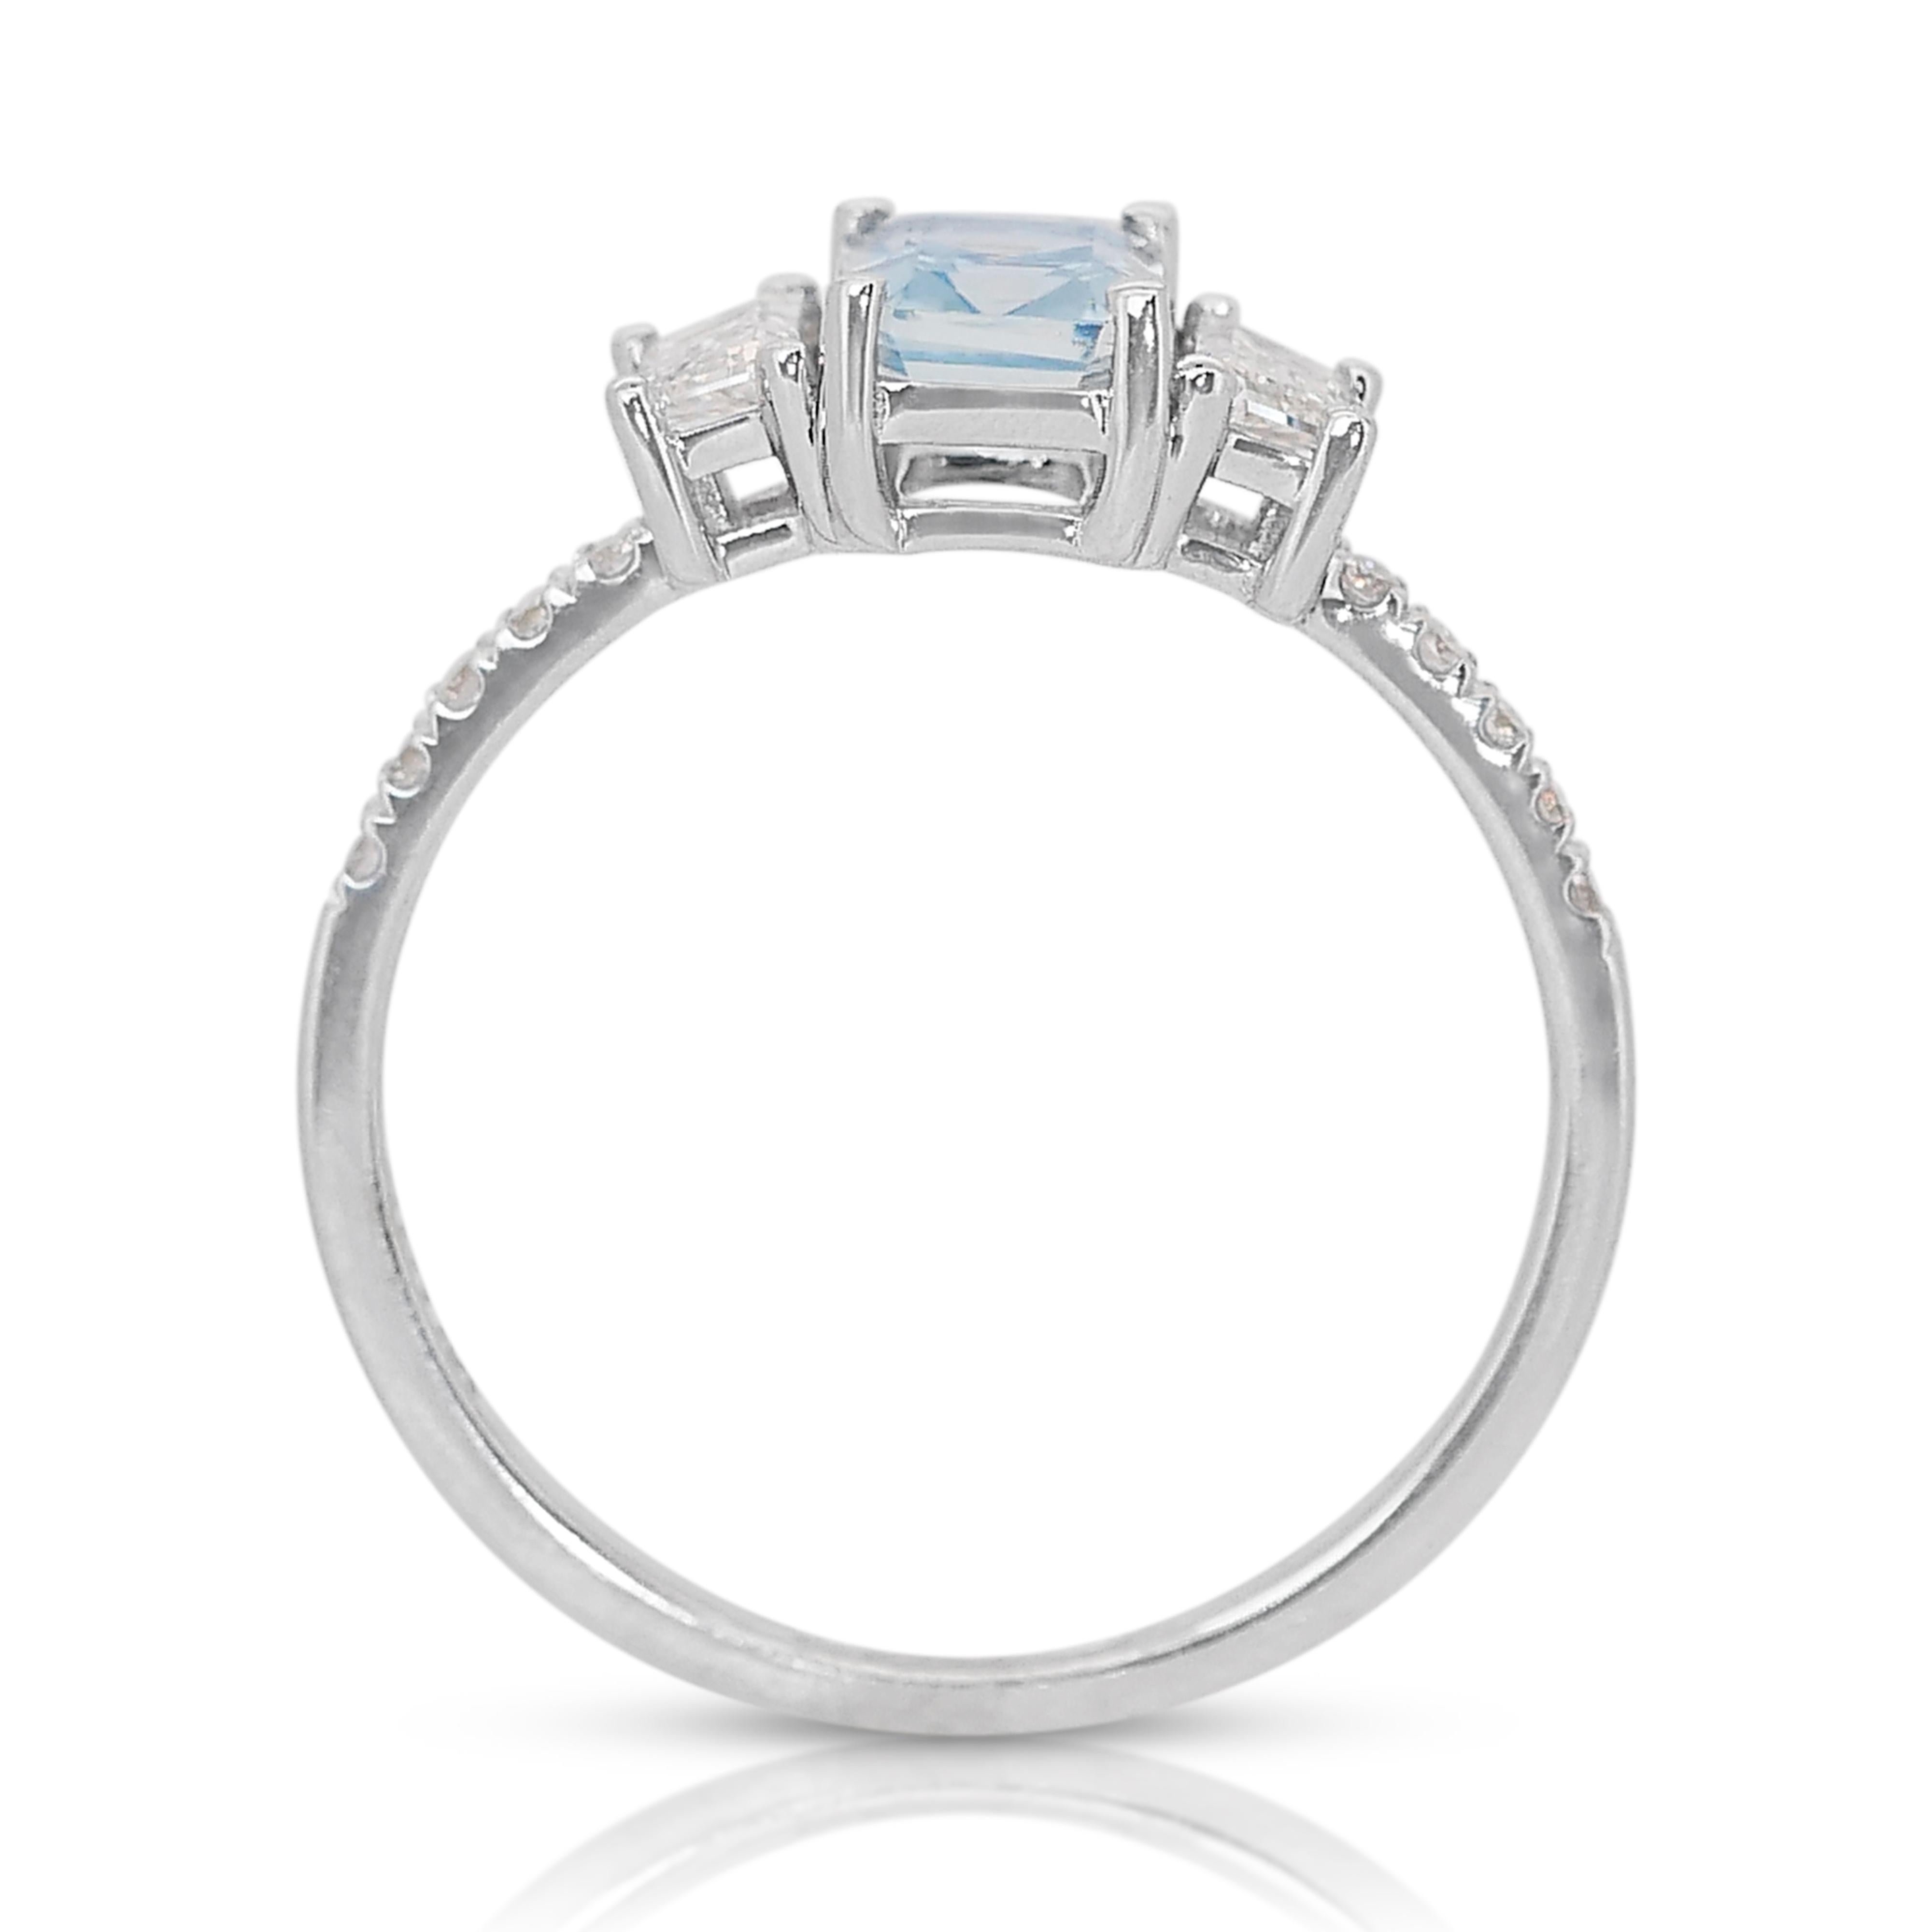 Elegant 1.28ct Aquamarine and Diamonds 3-Stone Ring in 18k White Gold - IGI Cert For Sale 1